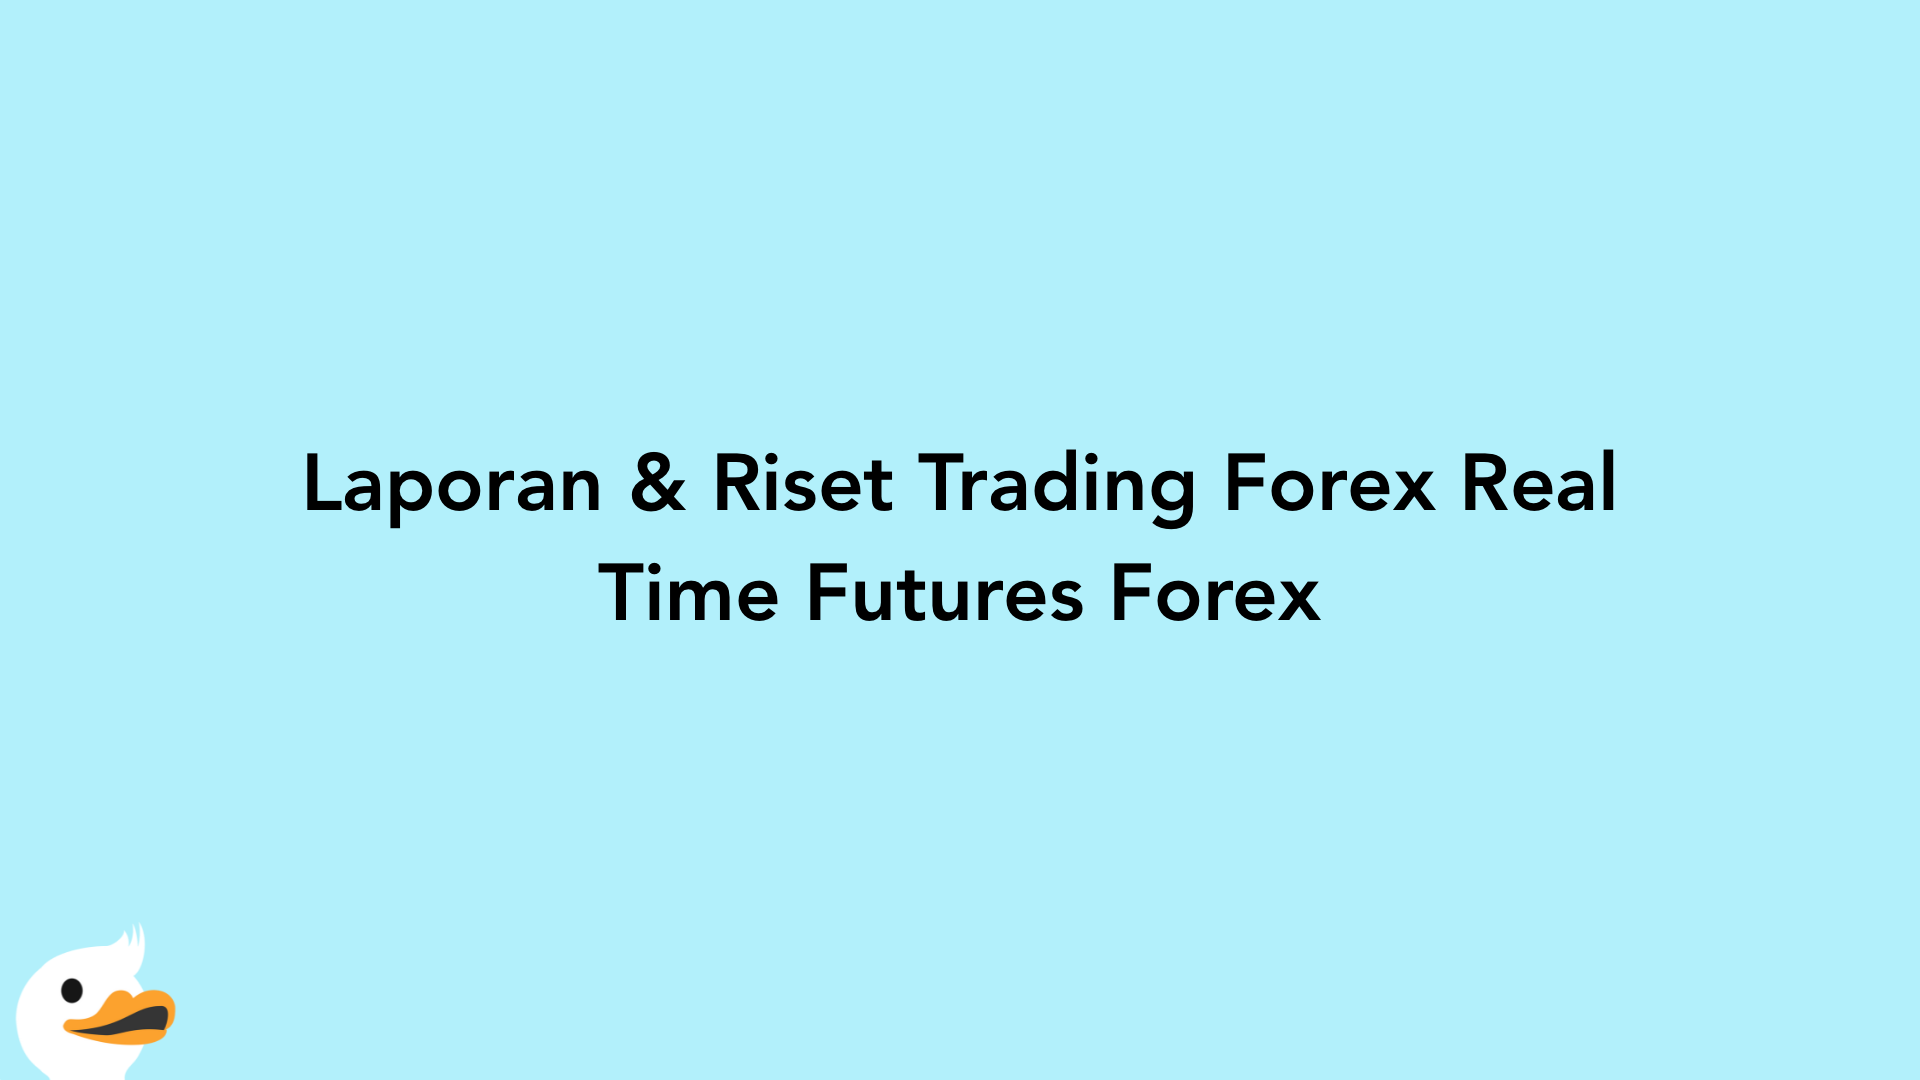 Laporan & Riset Trading Forex Real Time Futures Forex